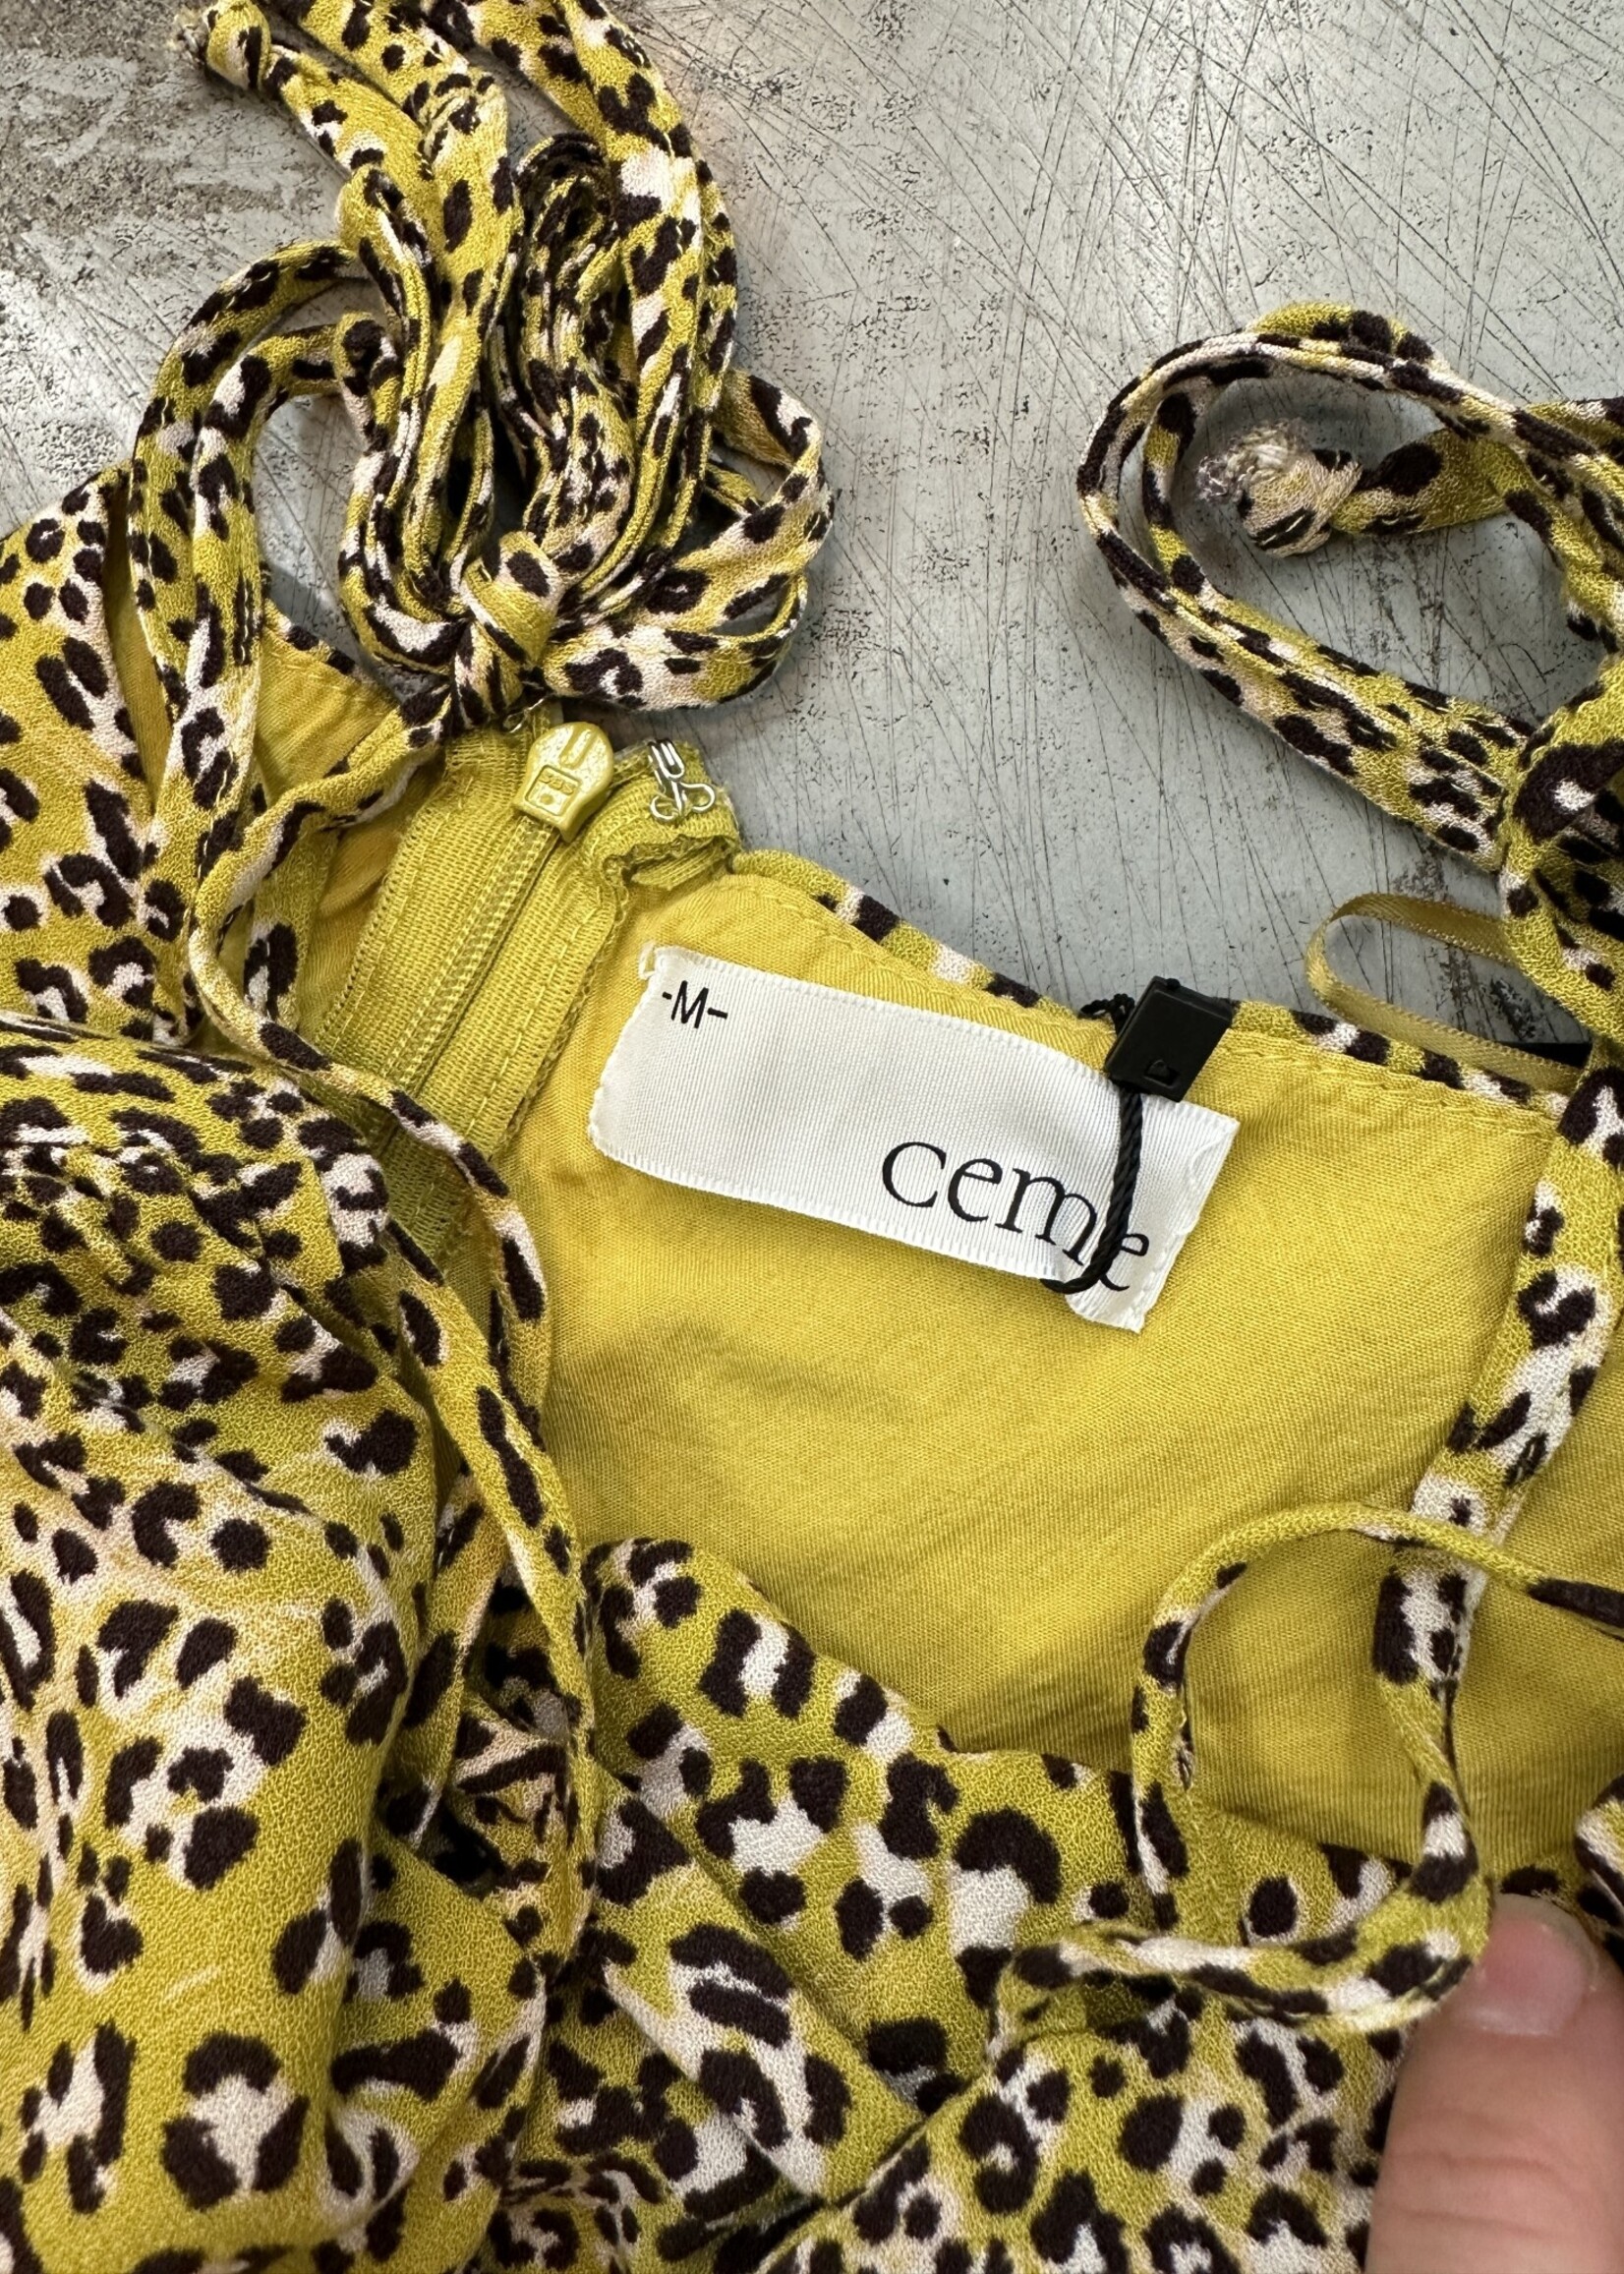 Ceme Cheetah Print Dress M